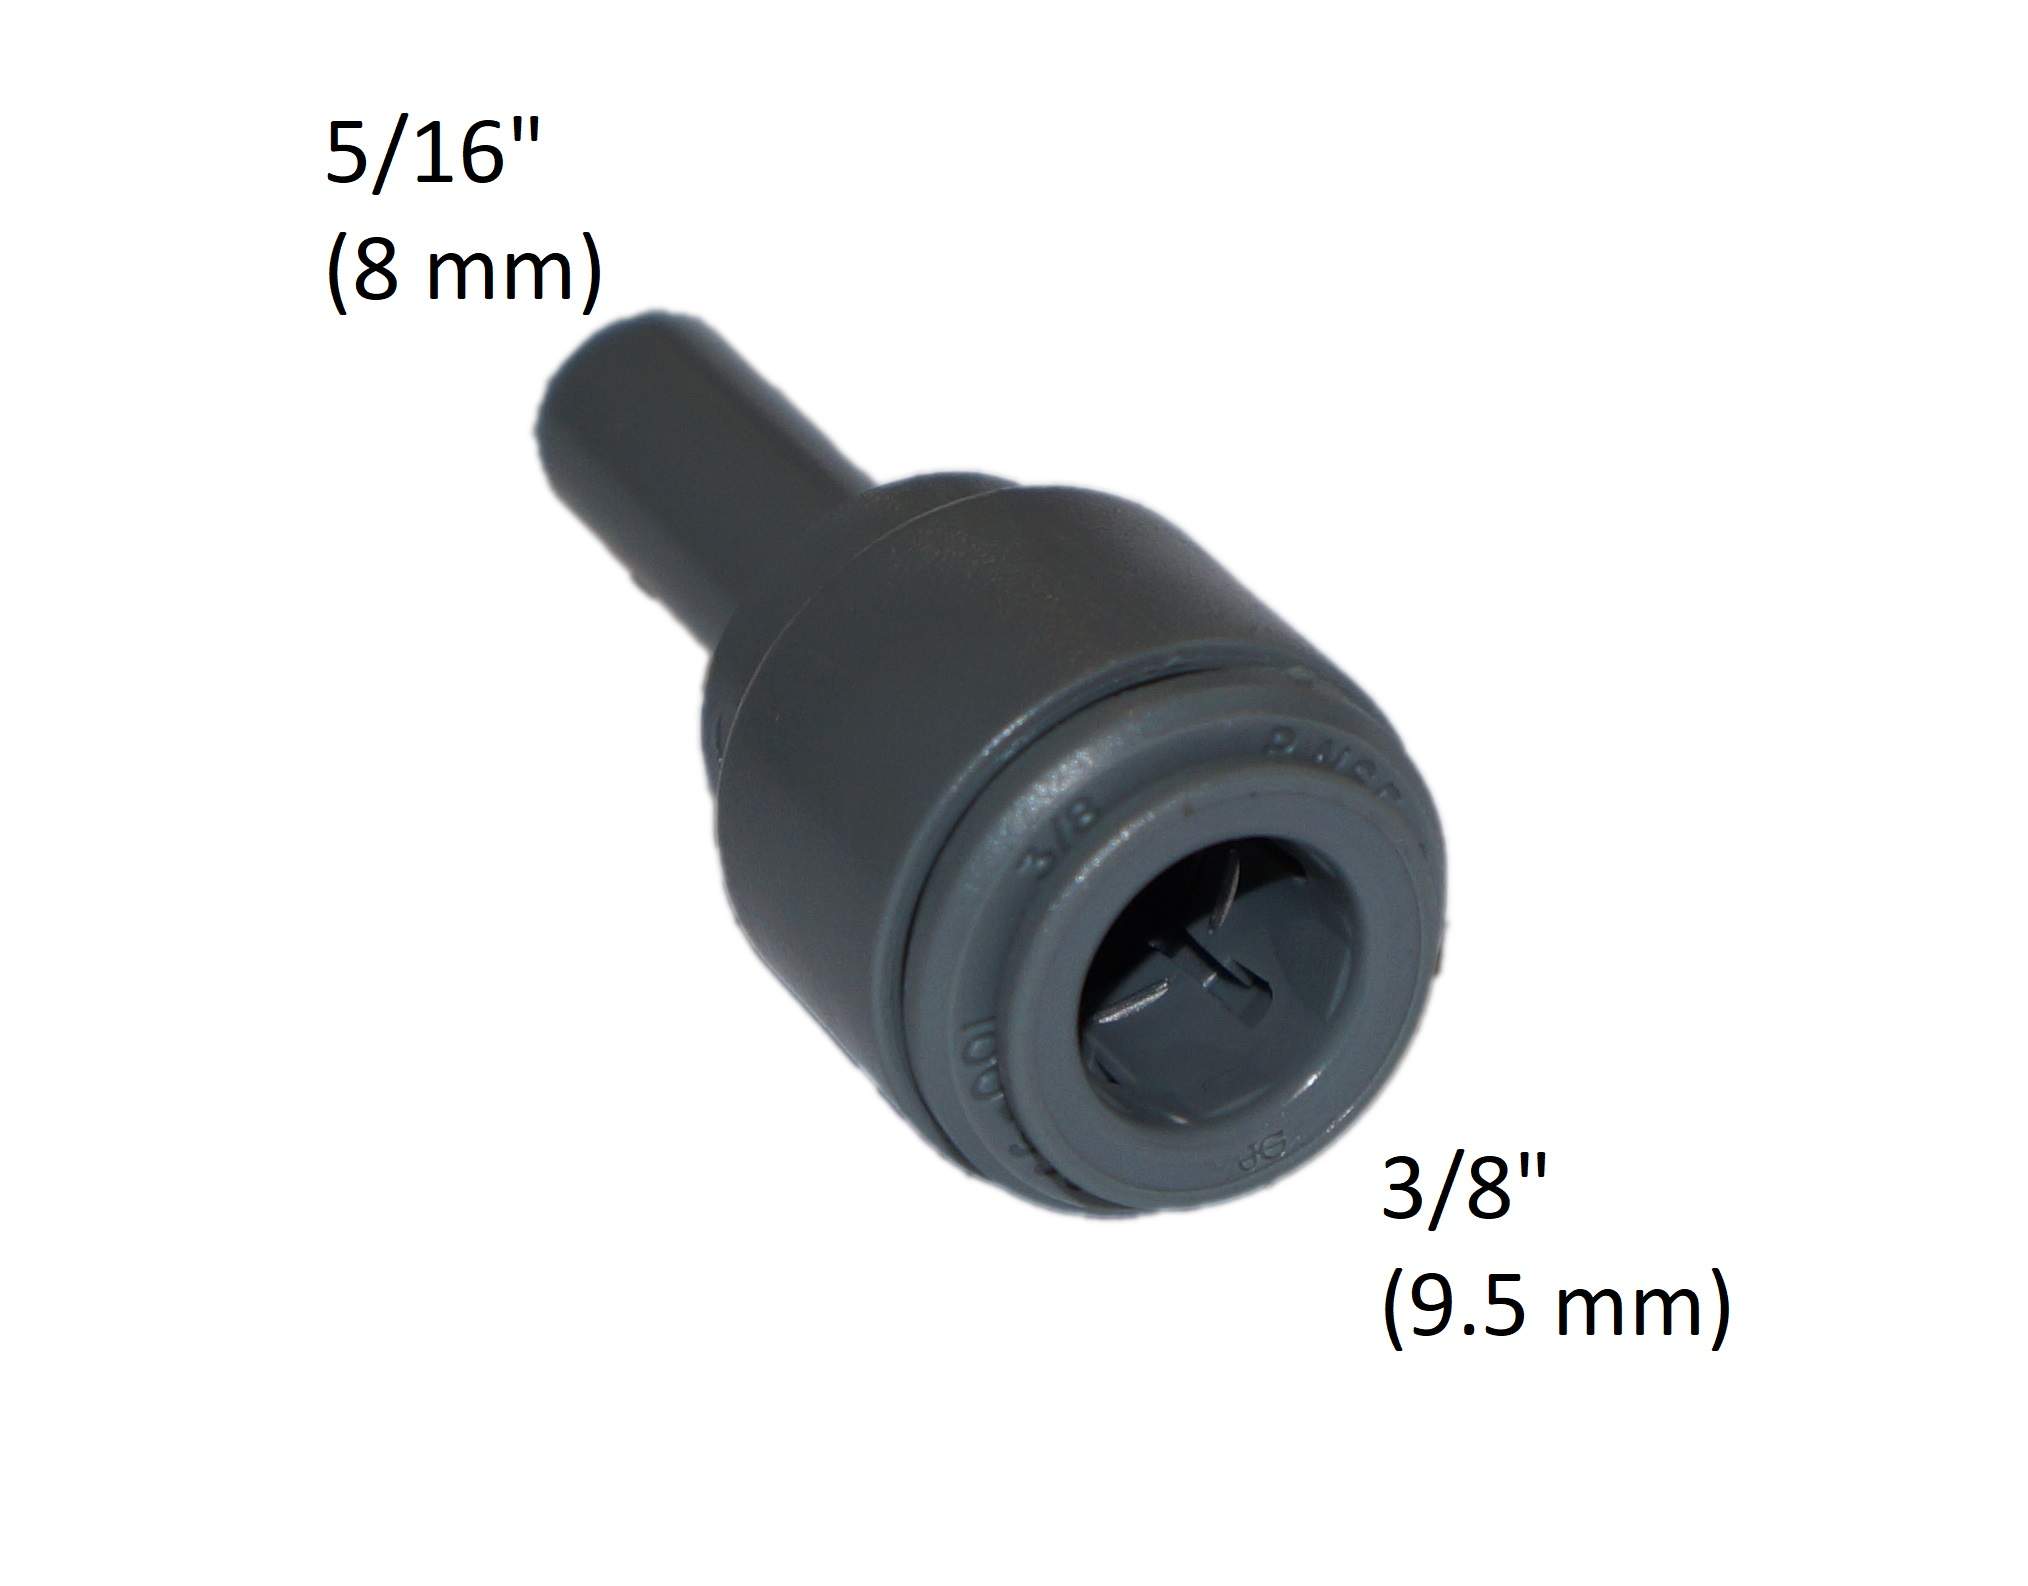 Kupplungsstück für Rohr 3/8" (9.5 mm) zu Buchse 5/16" (8mm)